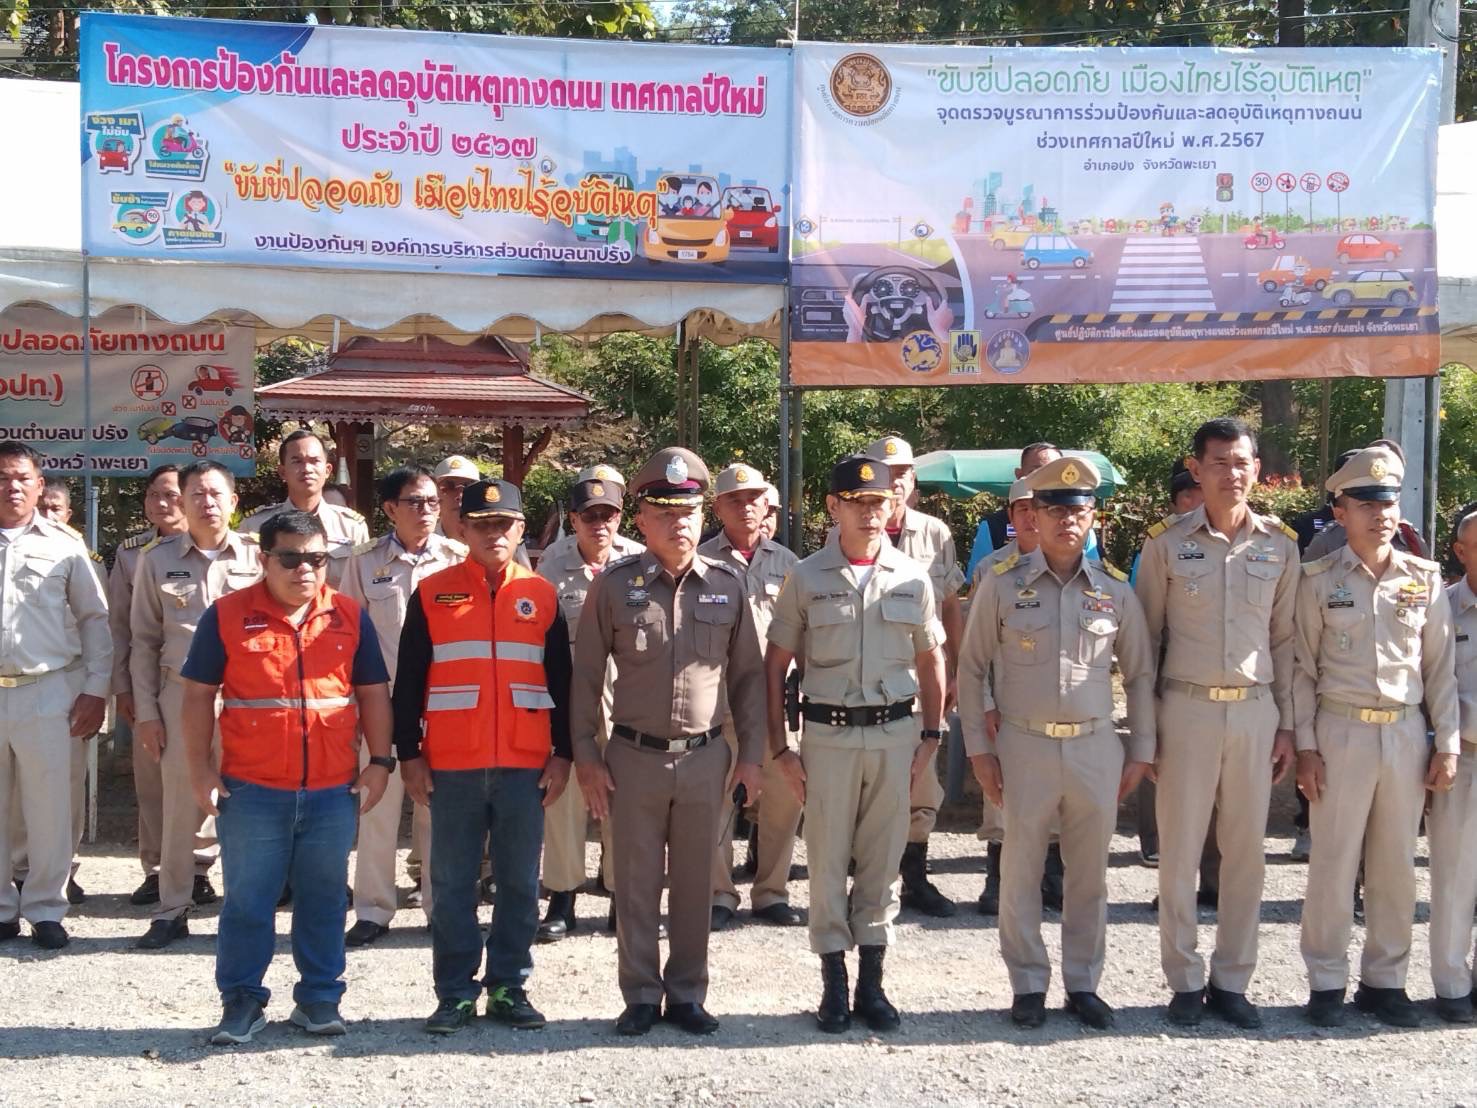 โครงการขับขี่ปลอดภัย เพื่อไทยไร้อุบัติเหตุ ณ จุดบูรณาการร่วมป้องกันและลดอุบัติเหตุ ช่วงเทศกาลปีใหม่ อำเภอปง จังหวัดพะเยา